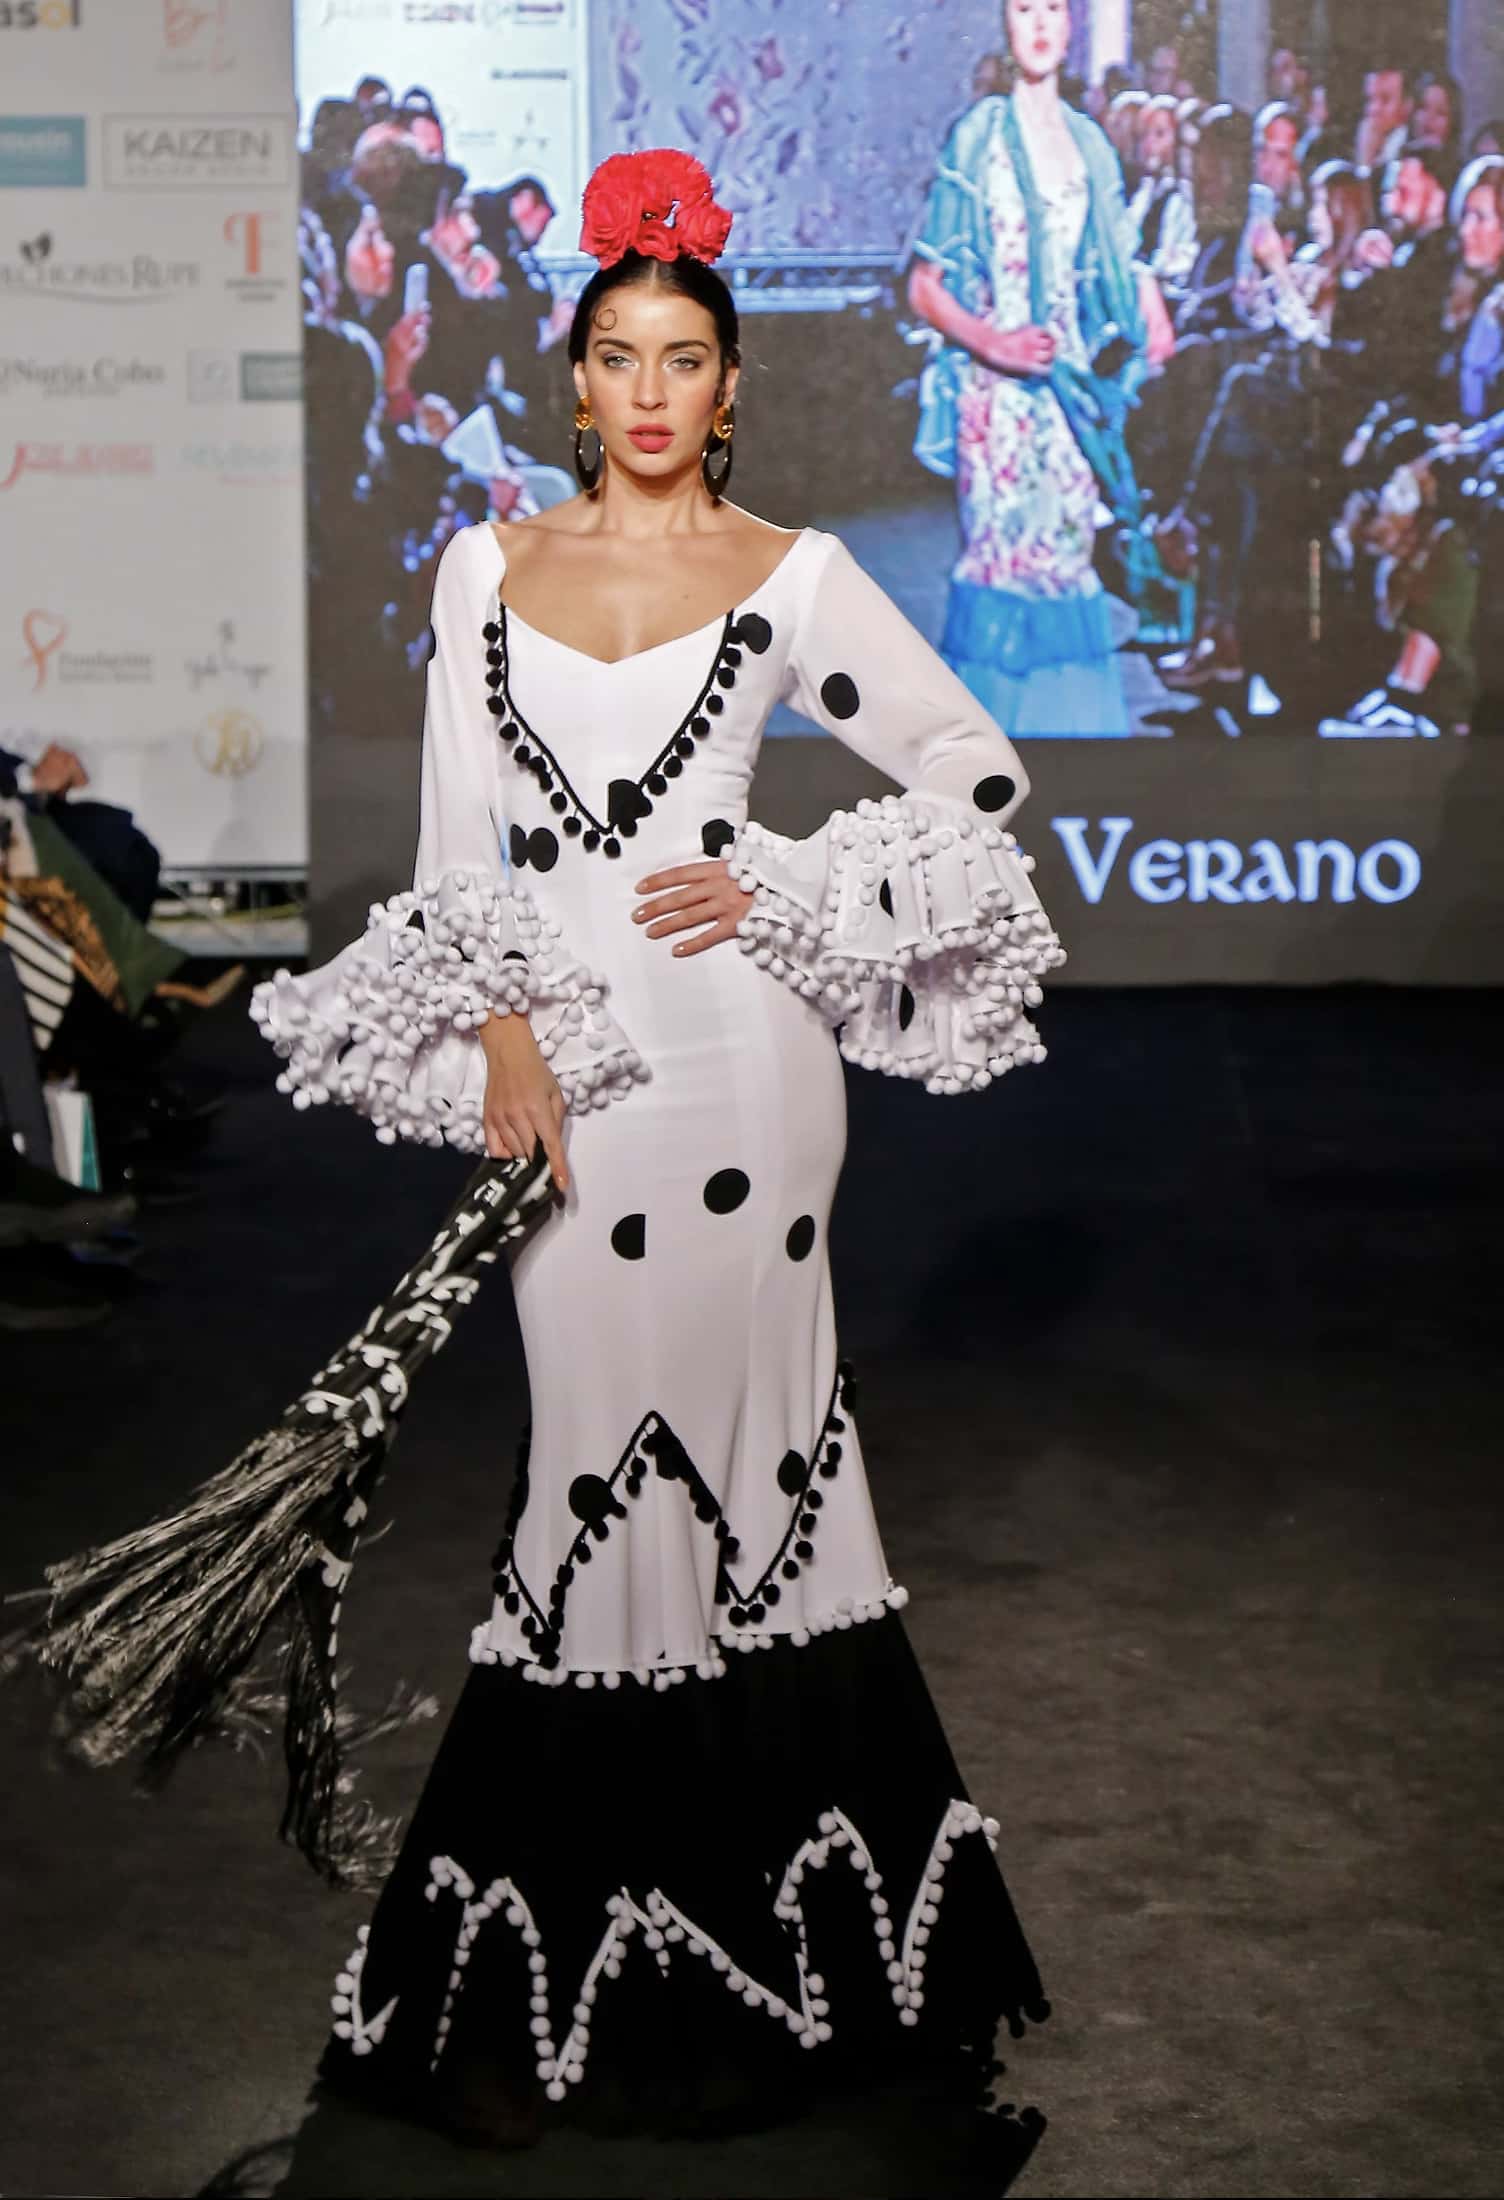 Podrido Superior Montañas climáticas Los mejores trajes de flamenca. Una tradición en vestidos andaluces